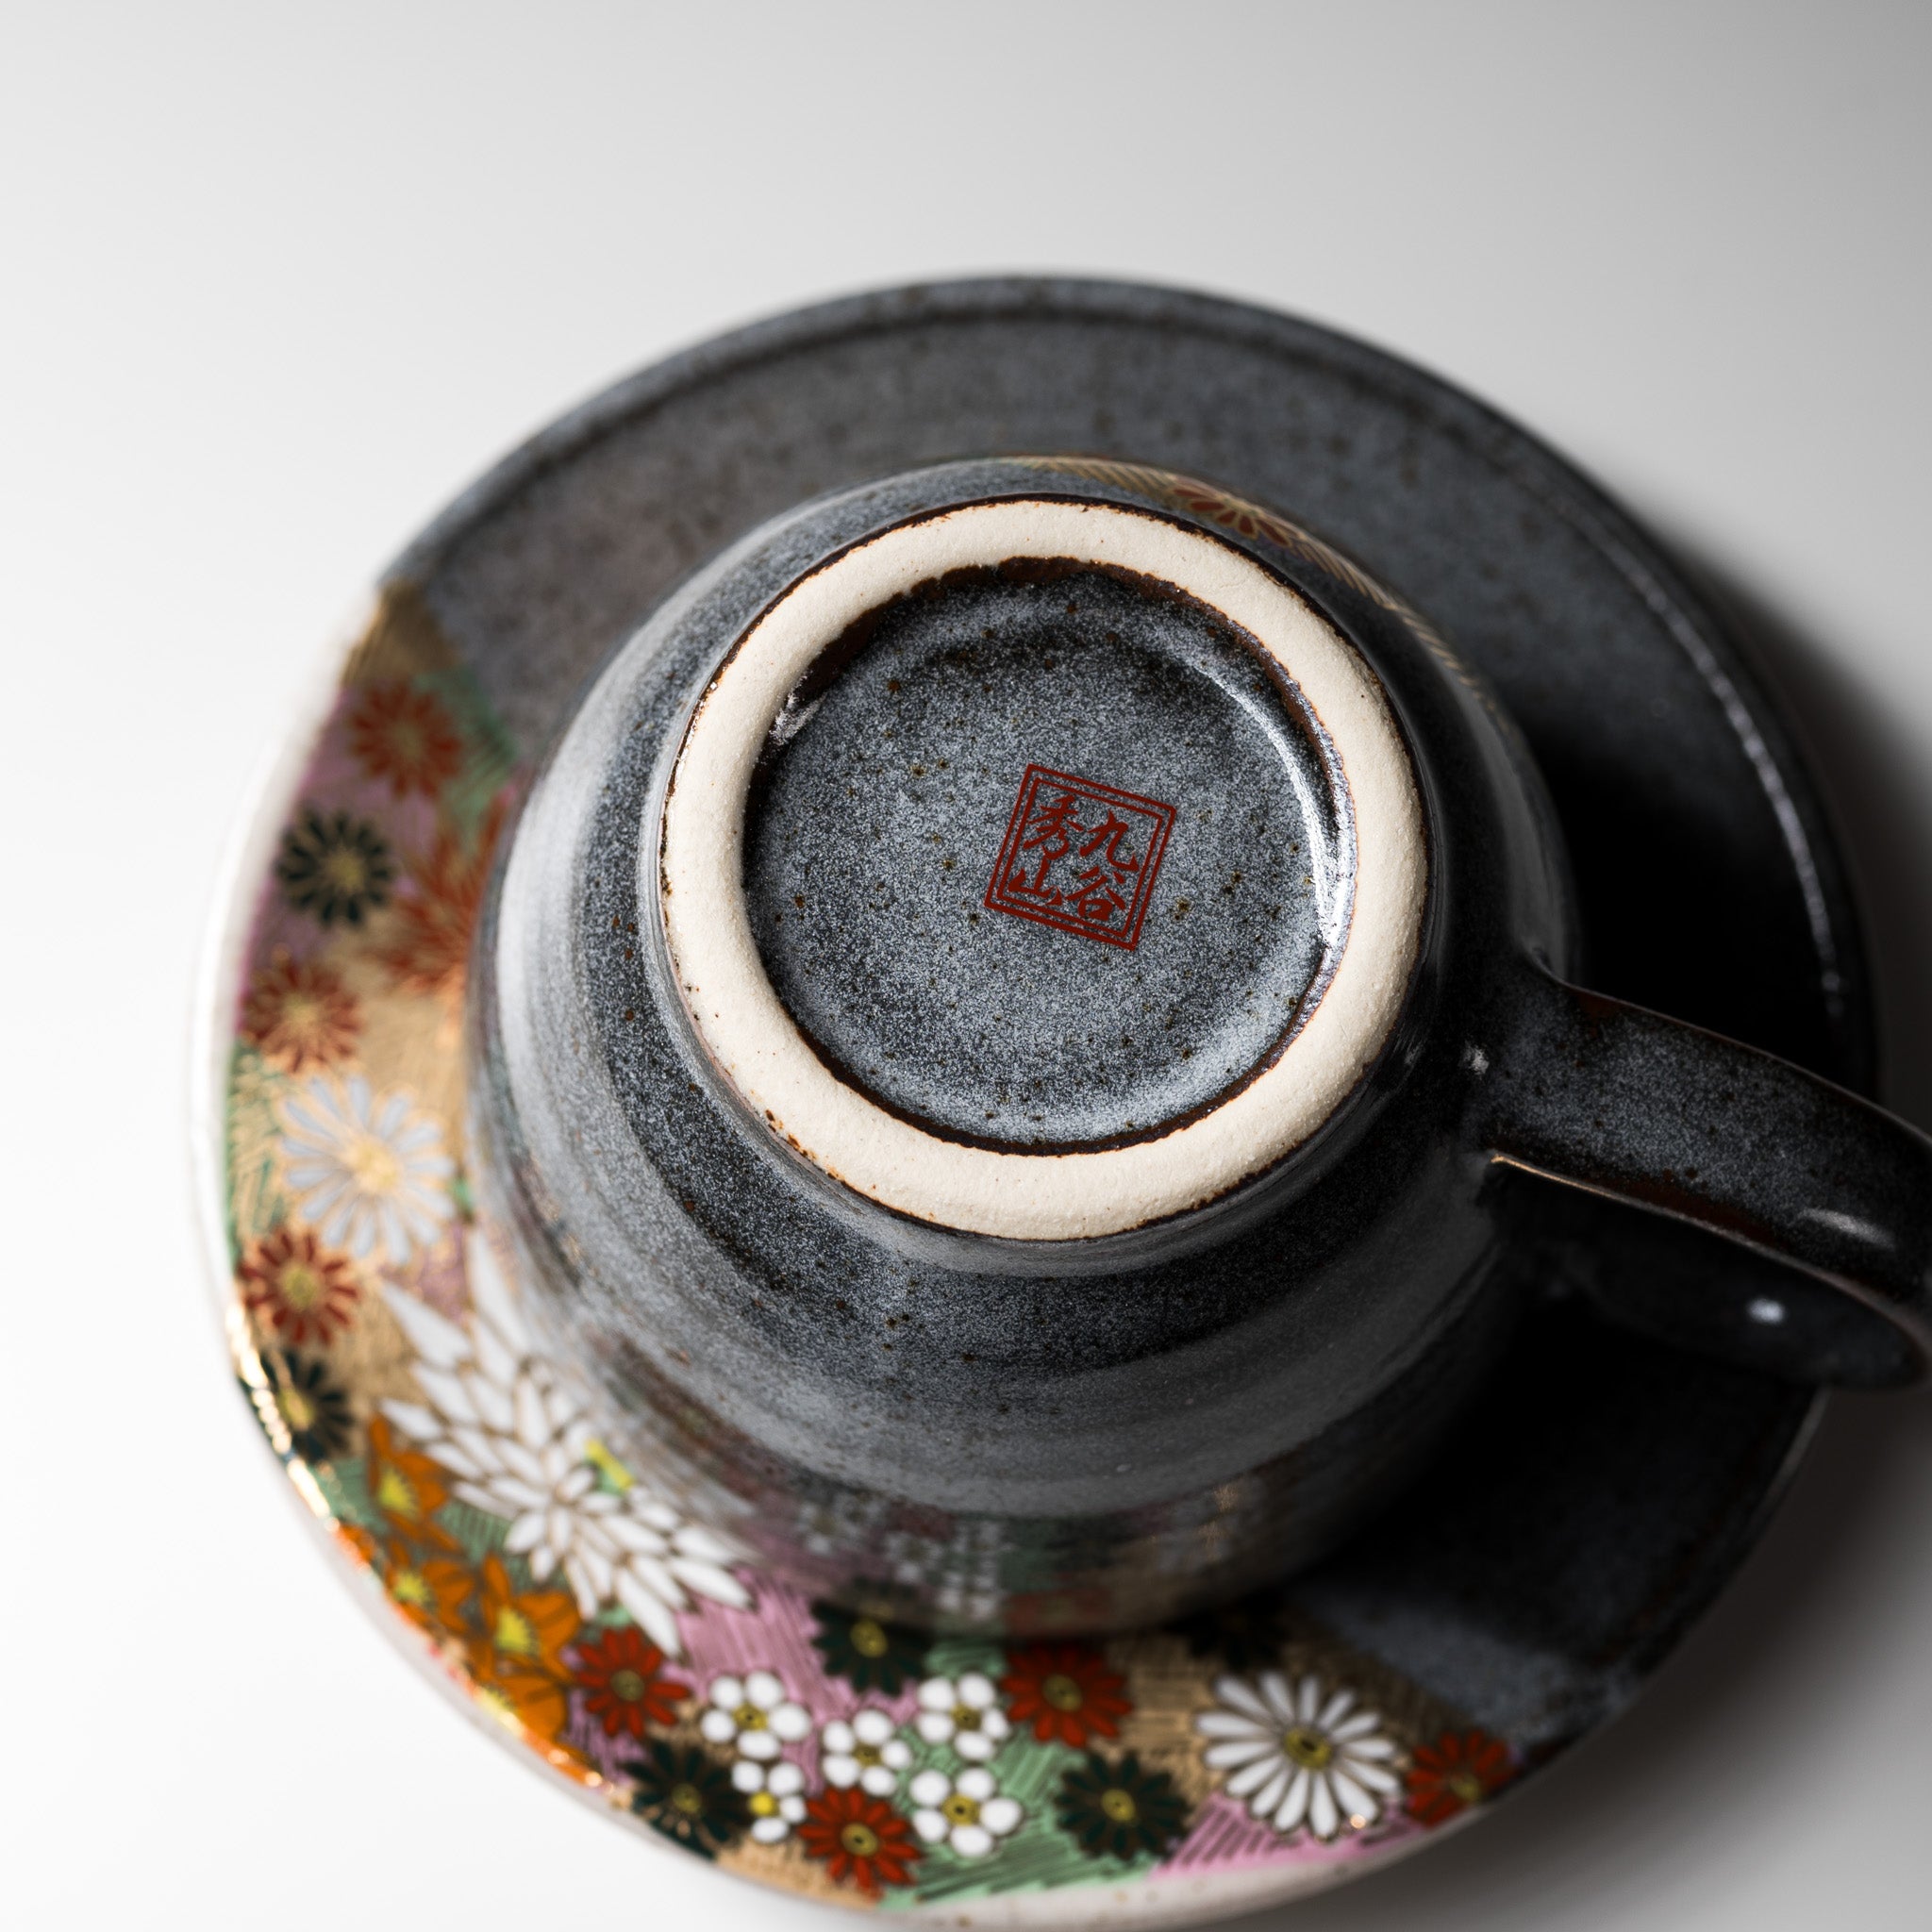 Kutani ware Premium Tea Cup and Saucer - Hanazume / 九谷焼 ティーカップ